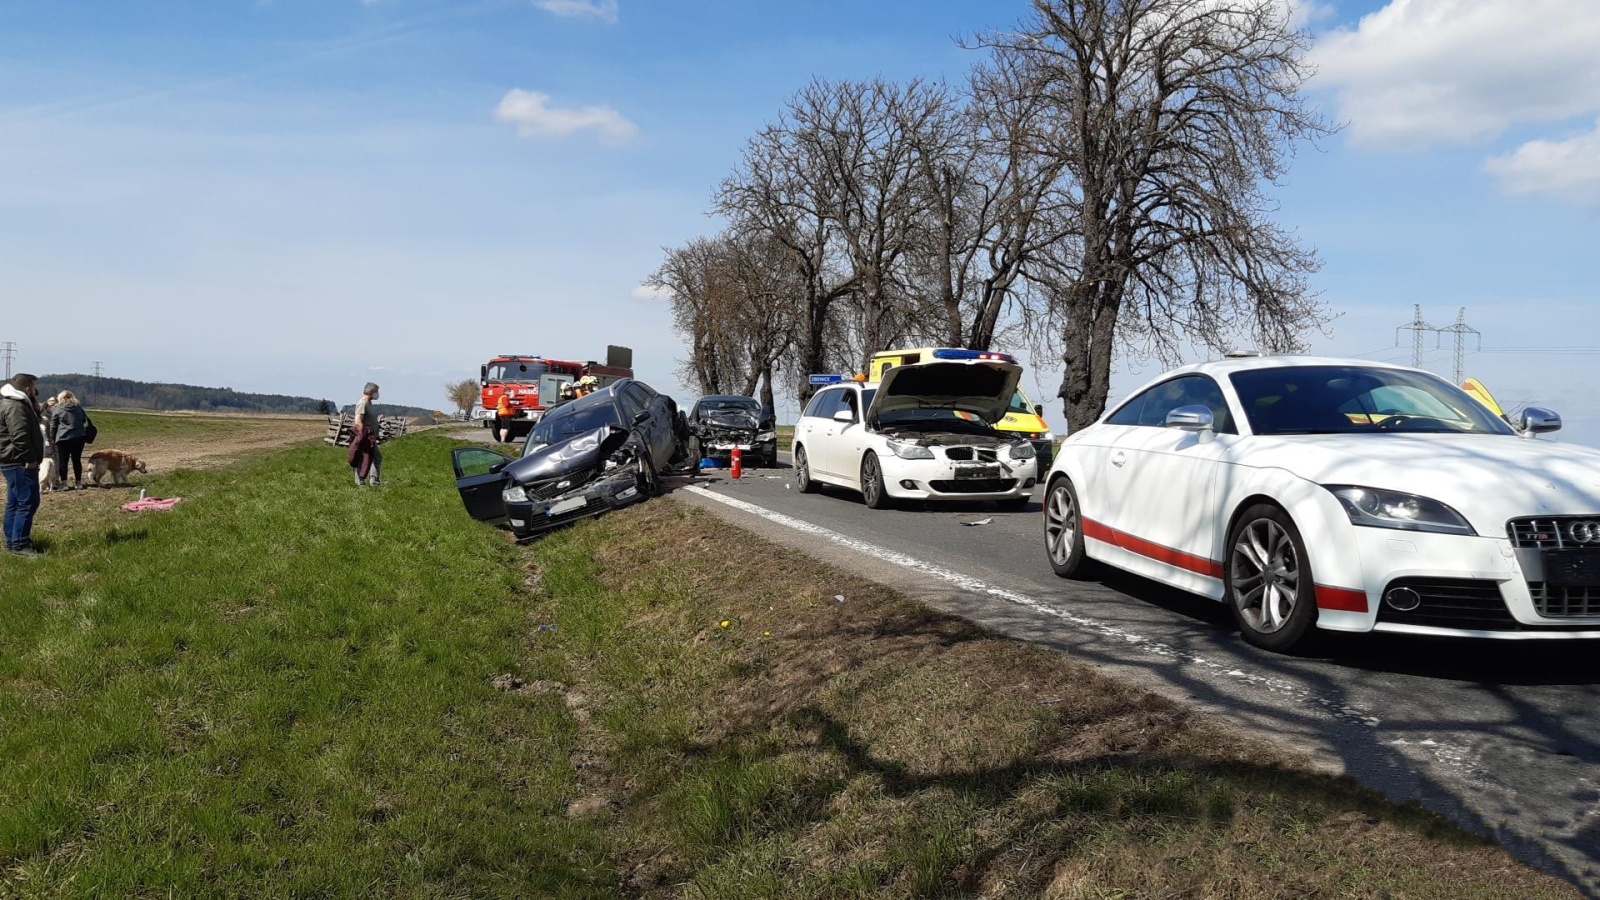 006-Hromadná nehoda na strakonické silnici na Příbramsku.jpg